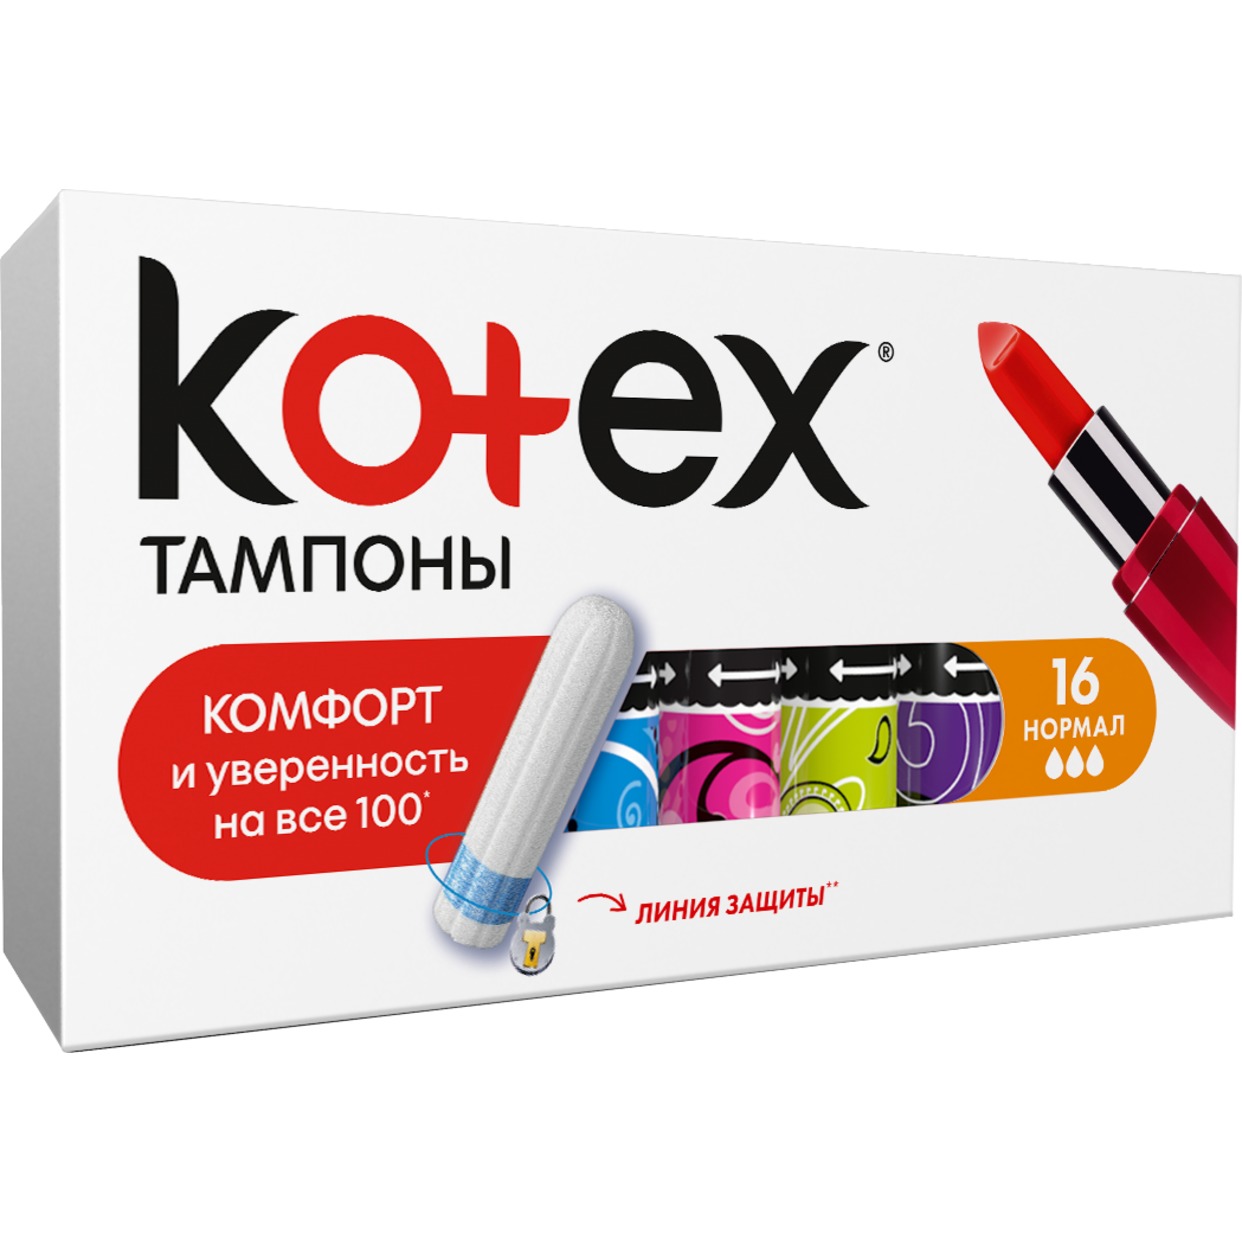 Тампоны Kotex Normal 16 шт. по акции в Пятерочке